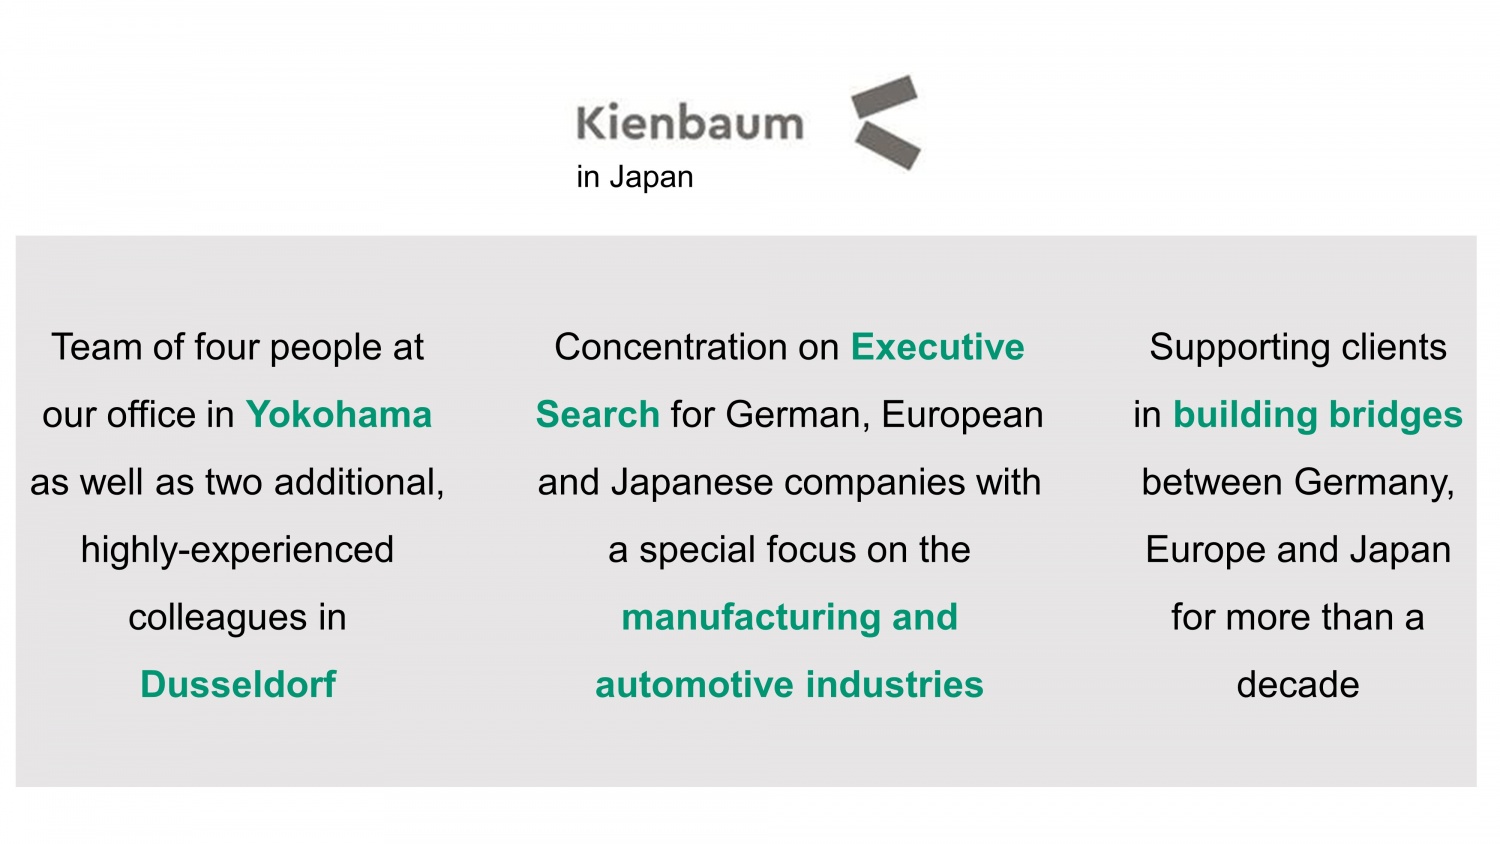 Description of Kienbaum in Japan